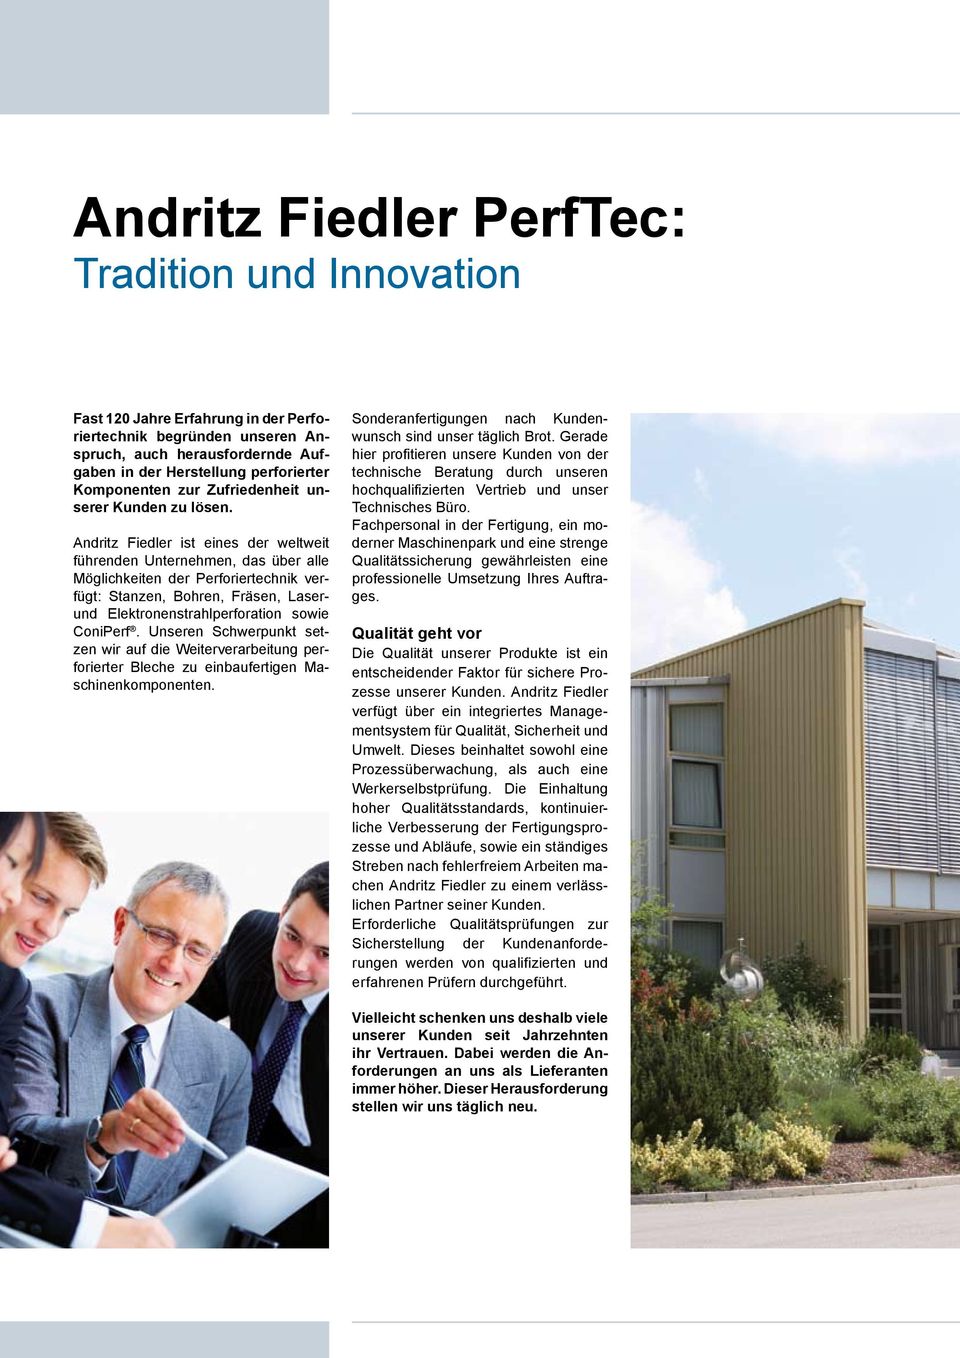 Andritz Fiedler ist eines der weltweit führenden Unternehmen, das über alle Möglichkeiten der Perforiertechnik verfügt: Stanzen, Bohren, Fräsen, Laserund Elektronenstrahlperforation sowie ConiPerf.